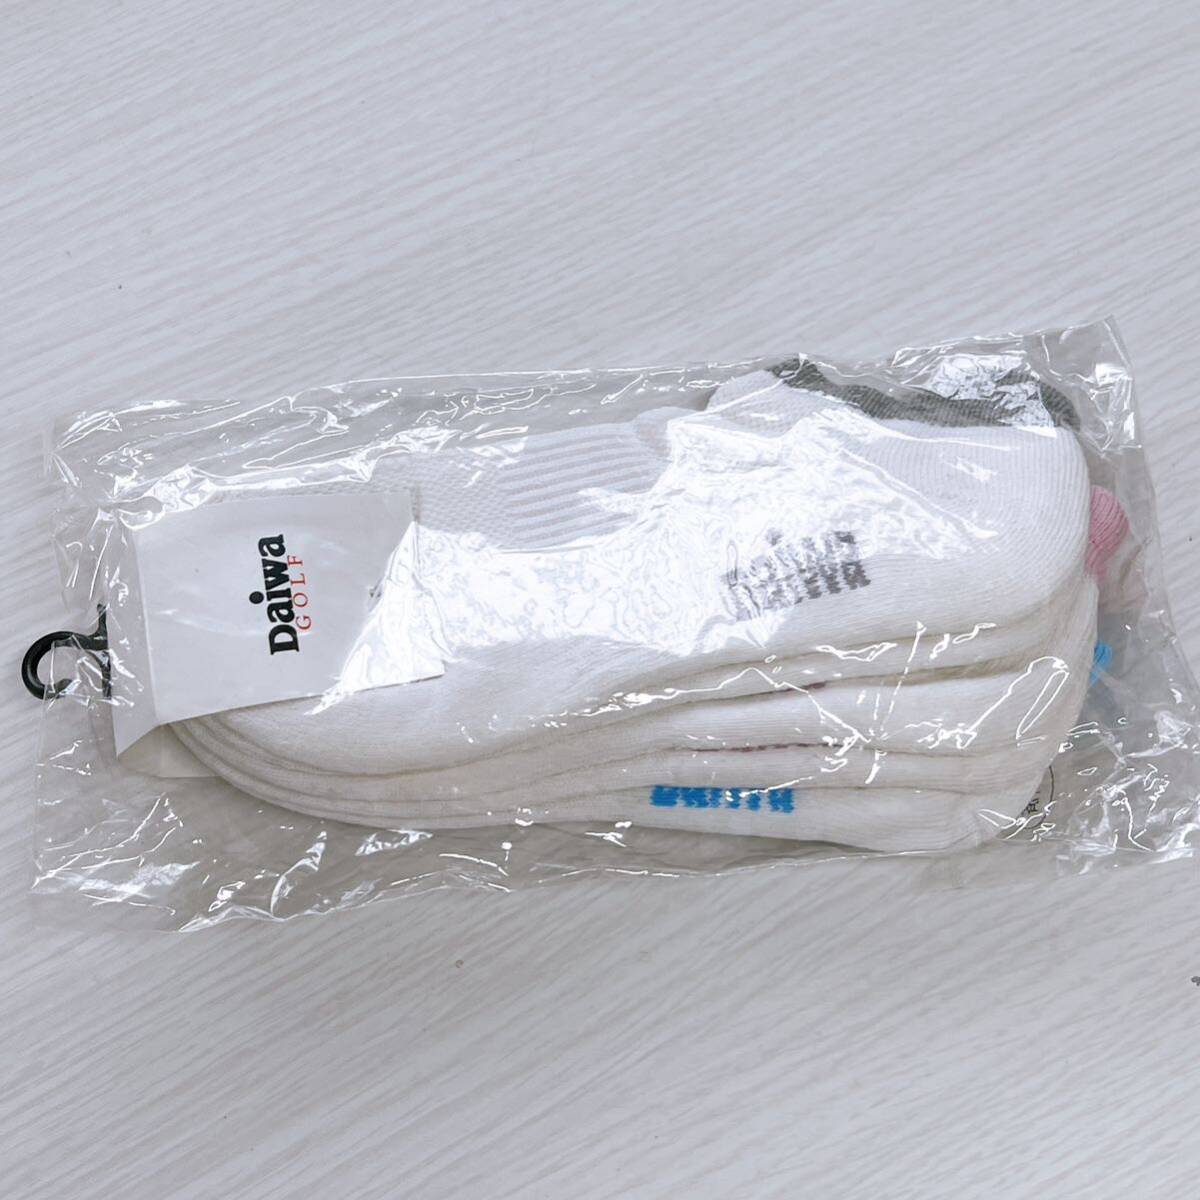 【新品未使用】Daiwa GOLF ダイワゴルフ 靴下 白 ソックス くるぶし 3足セット 3色 レディースフリーサイズ 22~24cm 速乾 khーG_画像2